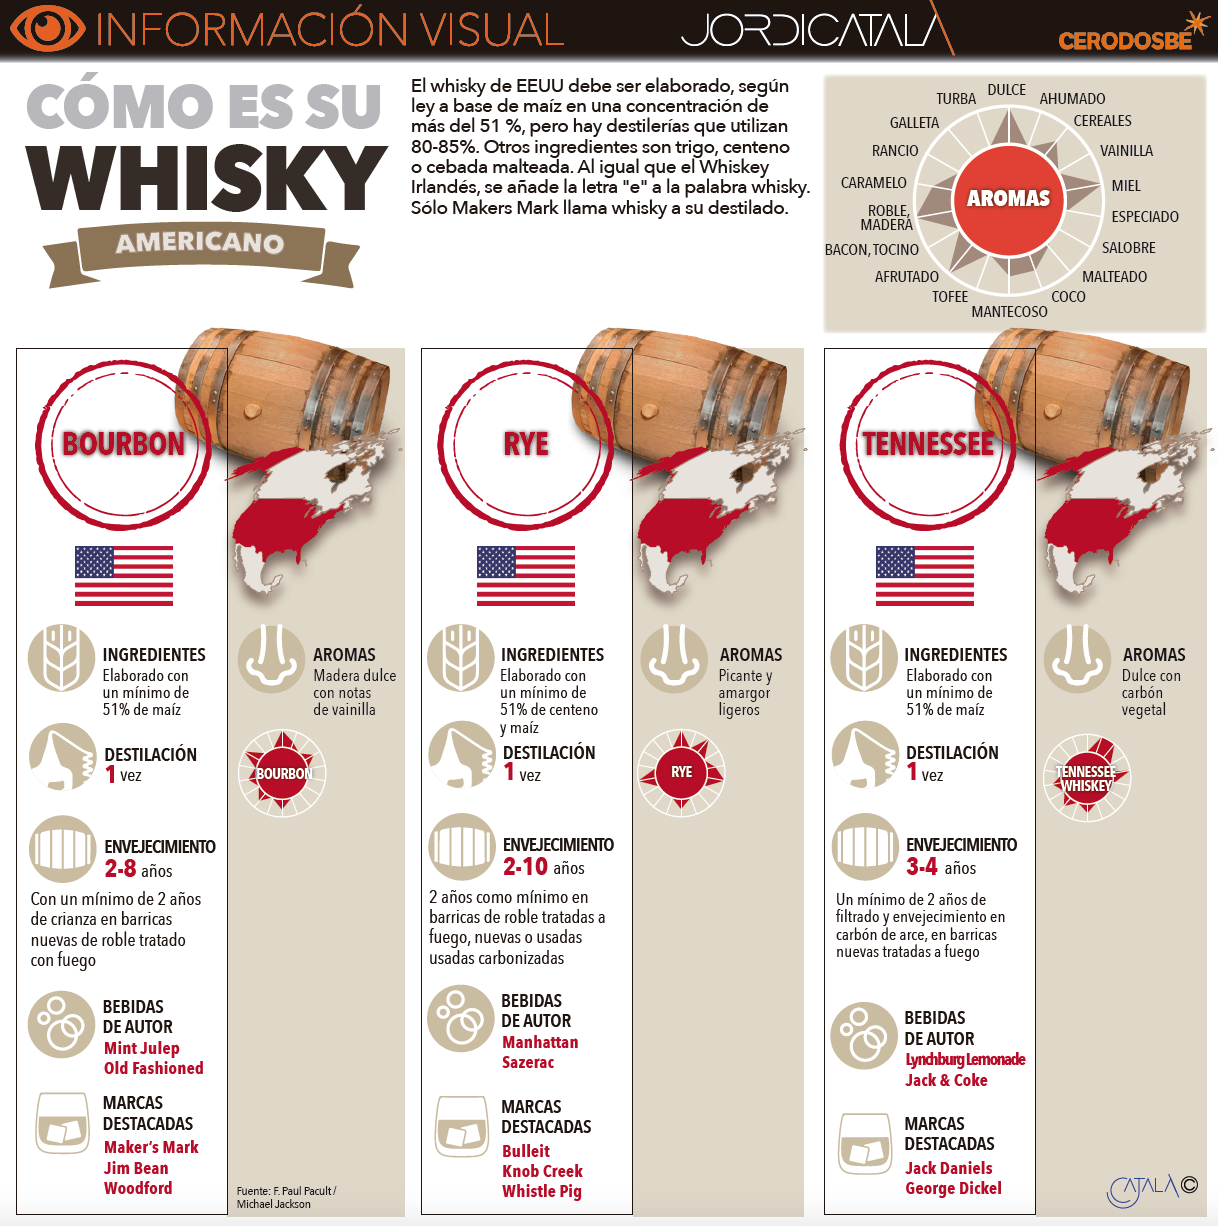 Info 2: Whisky